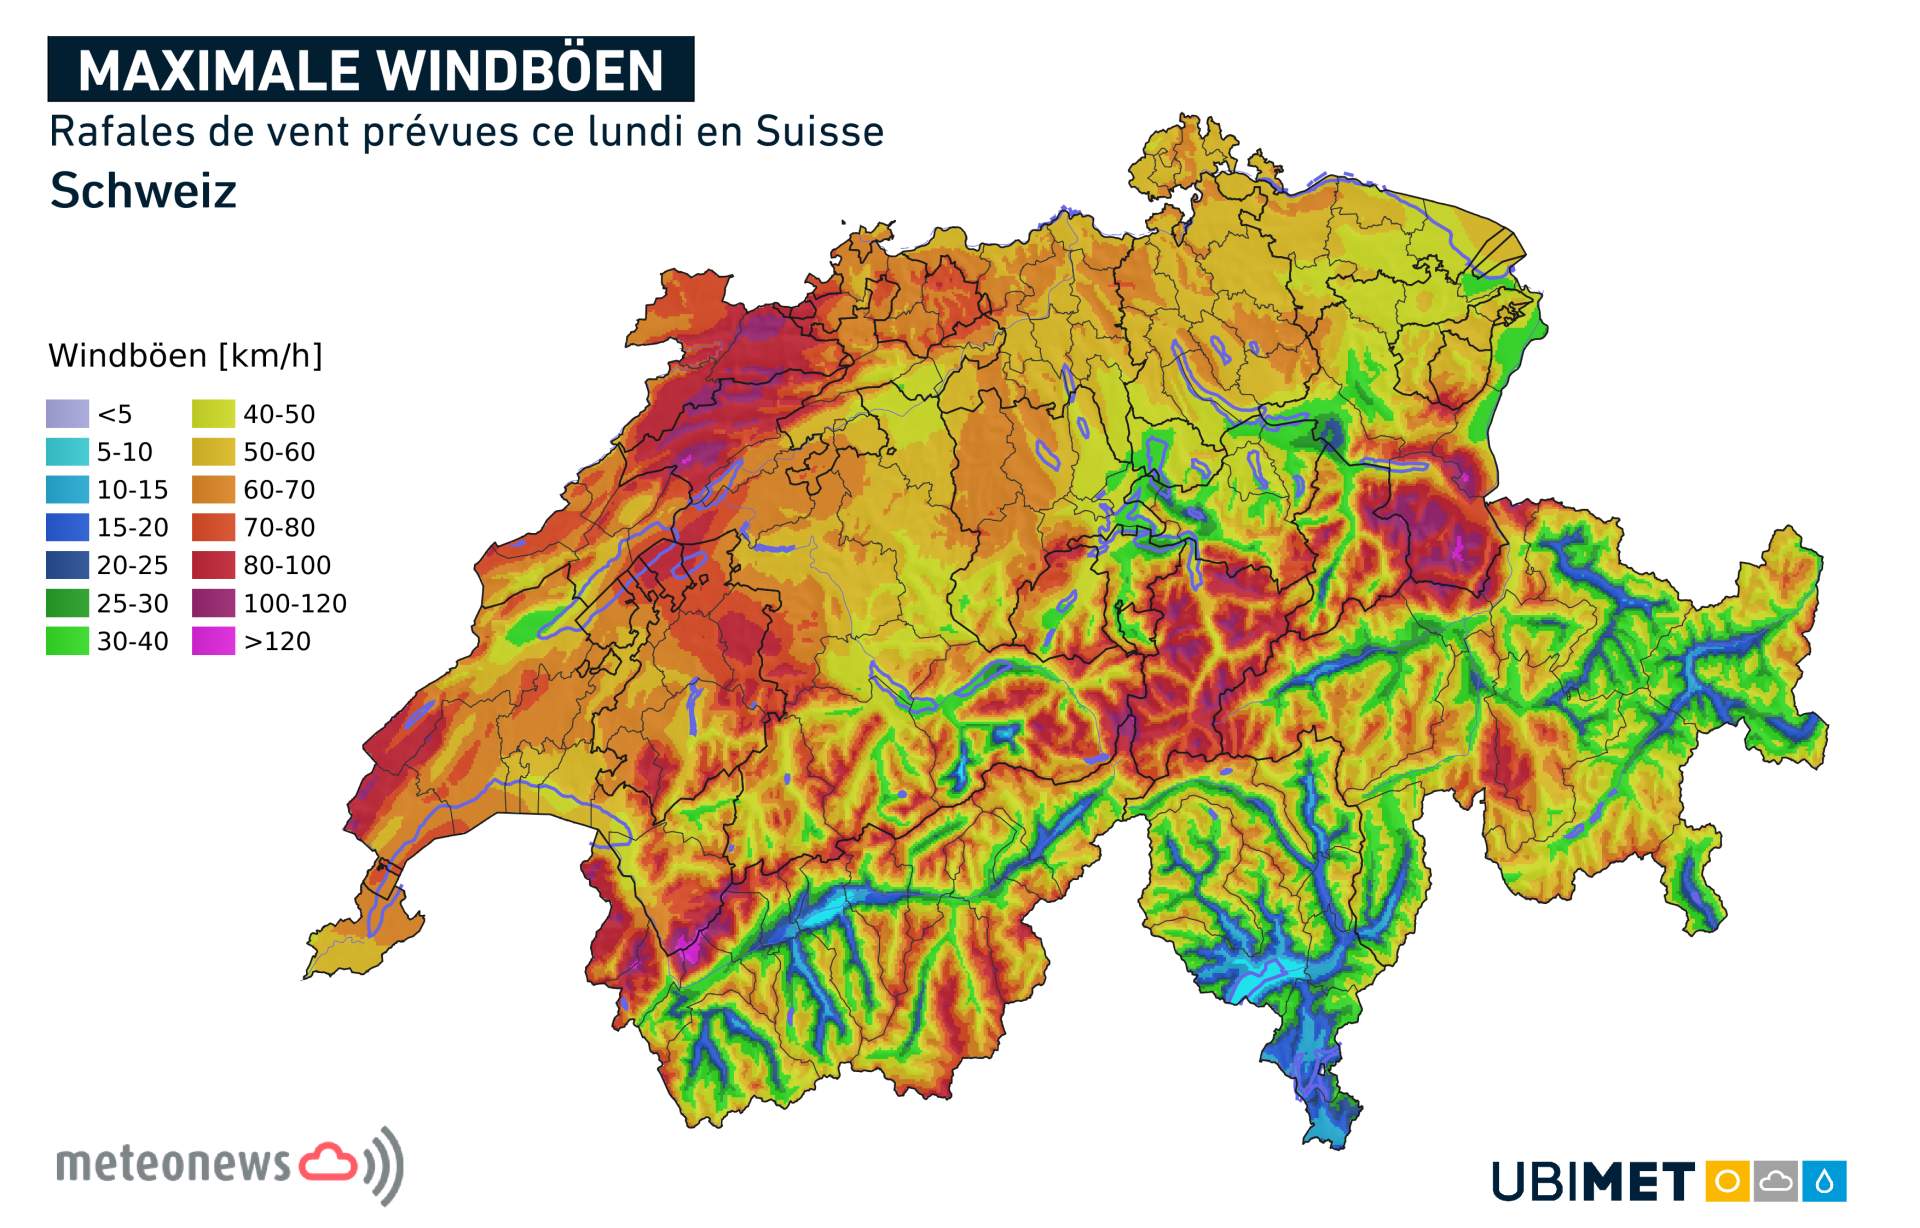 Fig. 4: Rafales de vent prévues lundi en Suisse